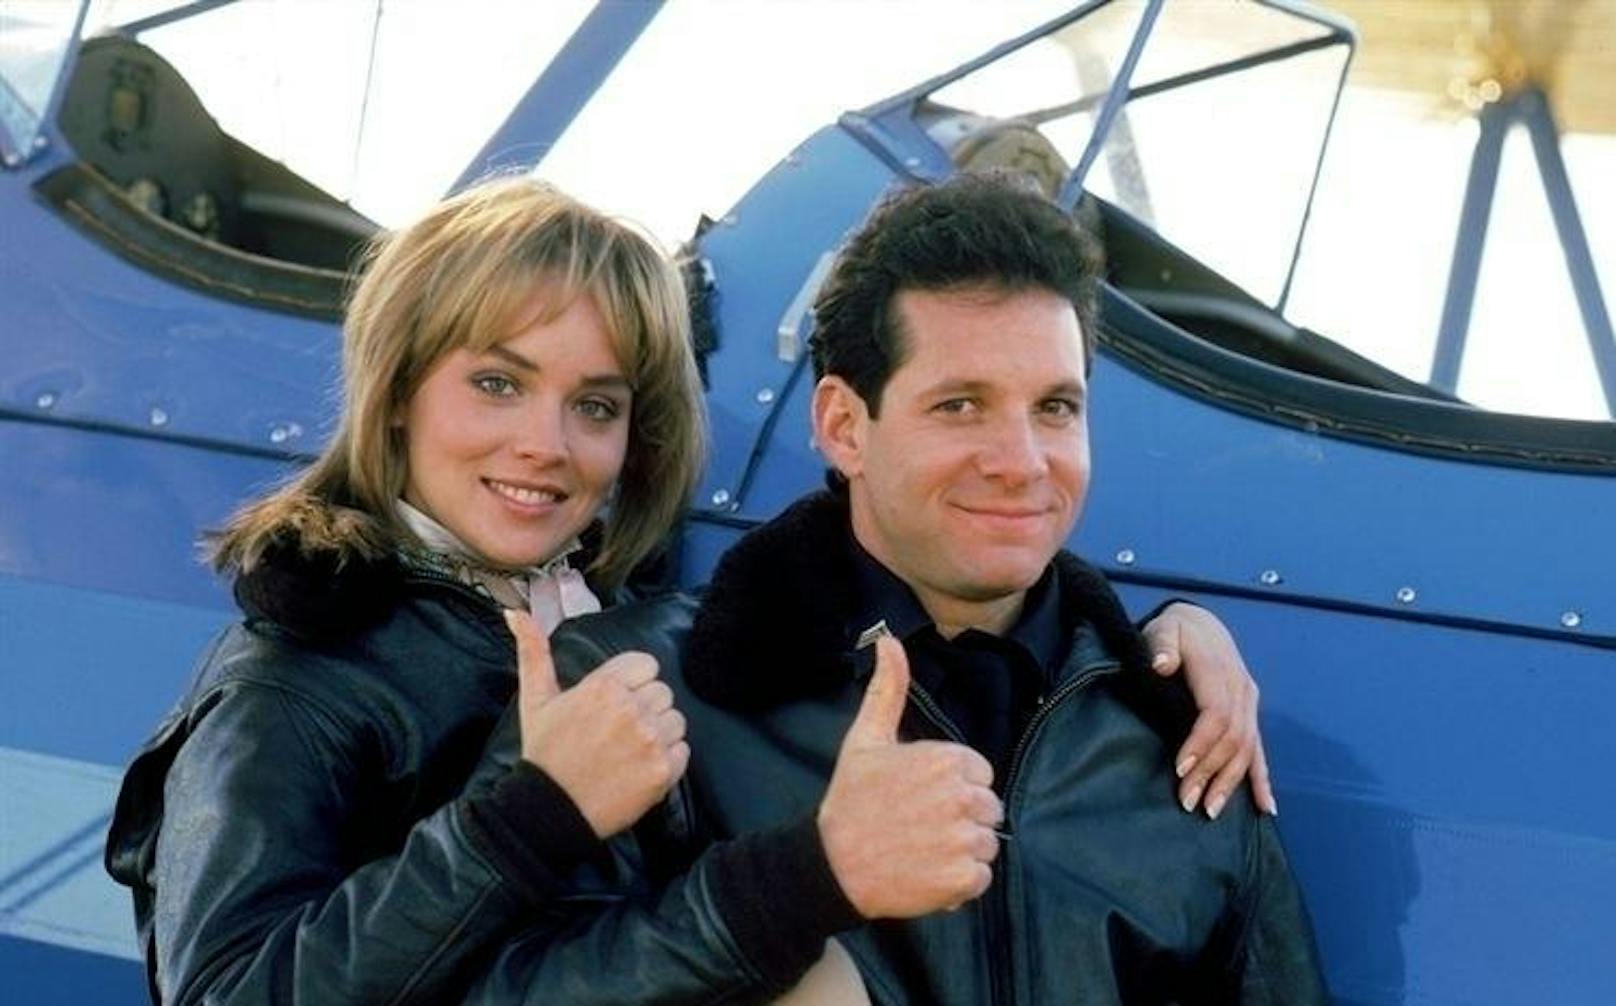 Sharon Stone und Steve Guttenberg in "Police Academy 4 ... und jetzt geht's rund".